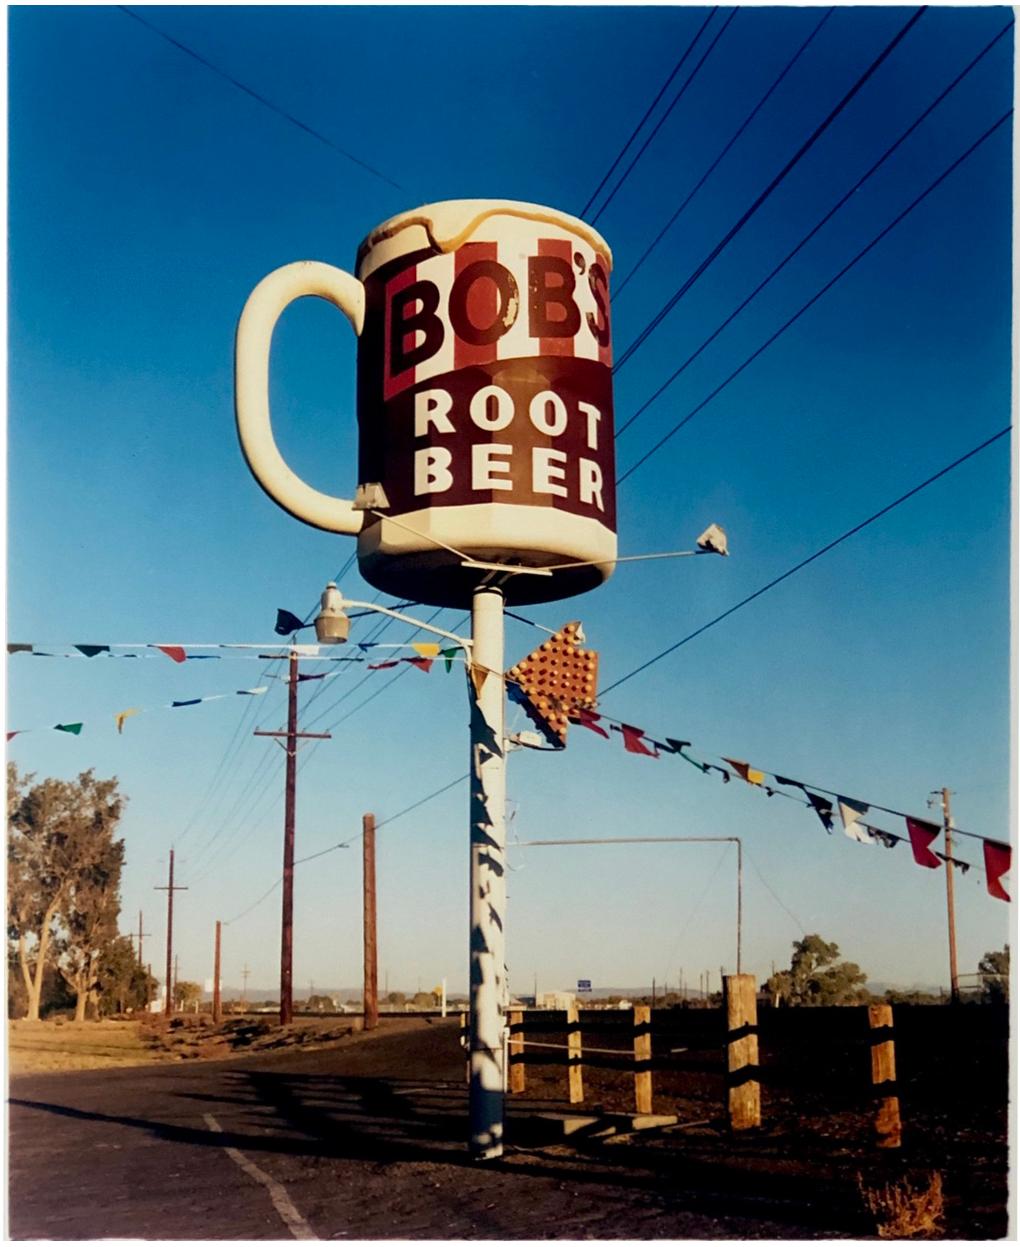 Color Photograph Richard Heeps - Bob's Root Beer, Fallon, Nevada - Photographie couleur américaine du milieu du siècle dernier